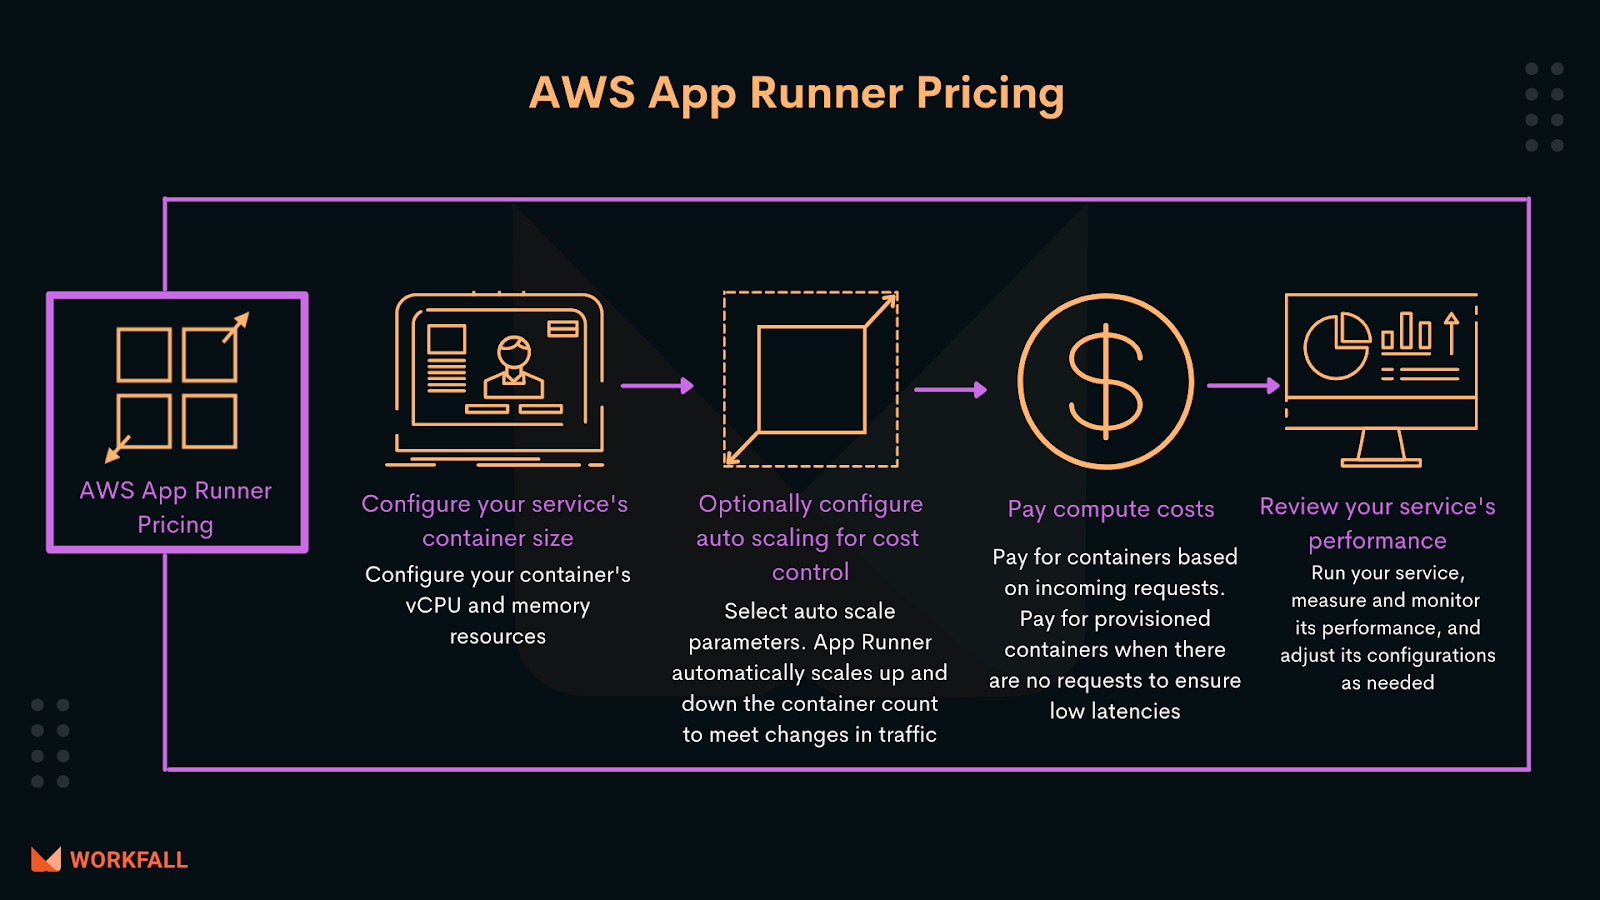 Pricing of AWS App Runner